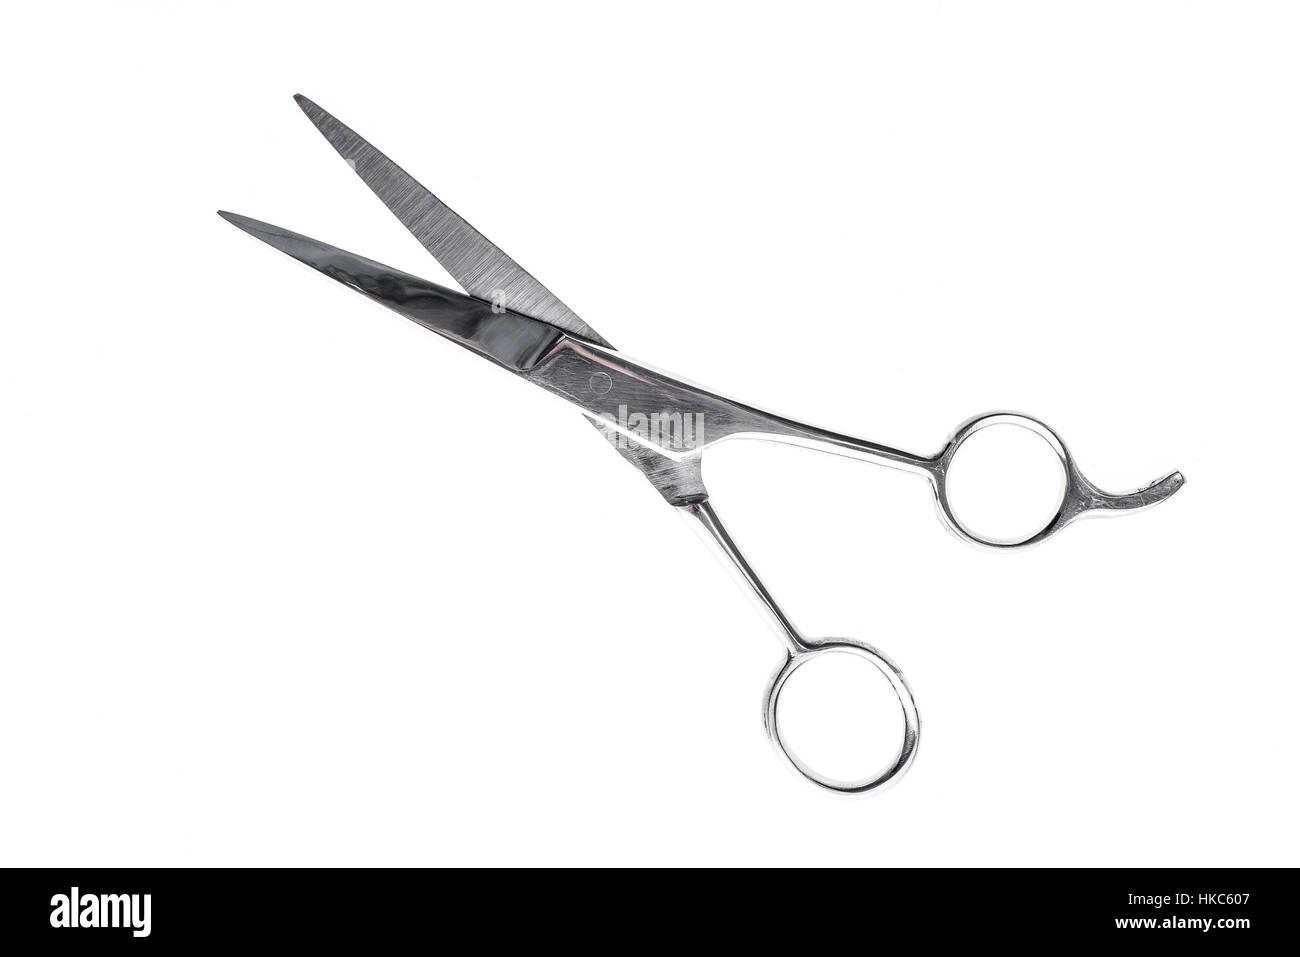 Friseurin oder Friseur Silber professionelle Scheren für Haare schneiden. Isoliert auf weißem Hintergrund Stockfoto